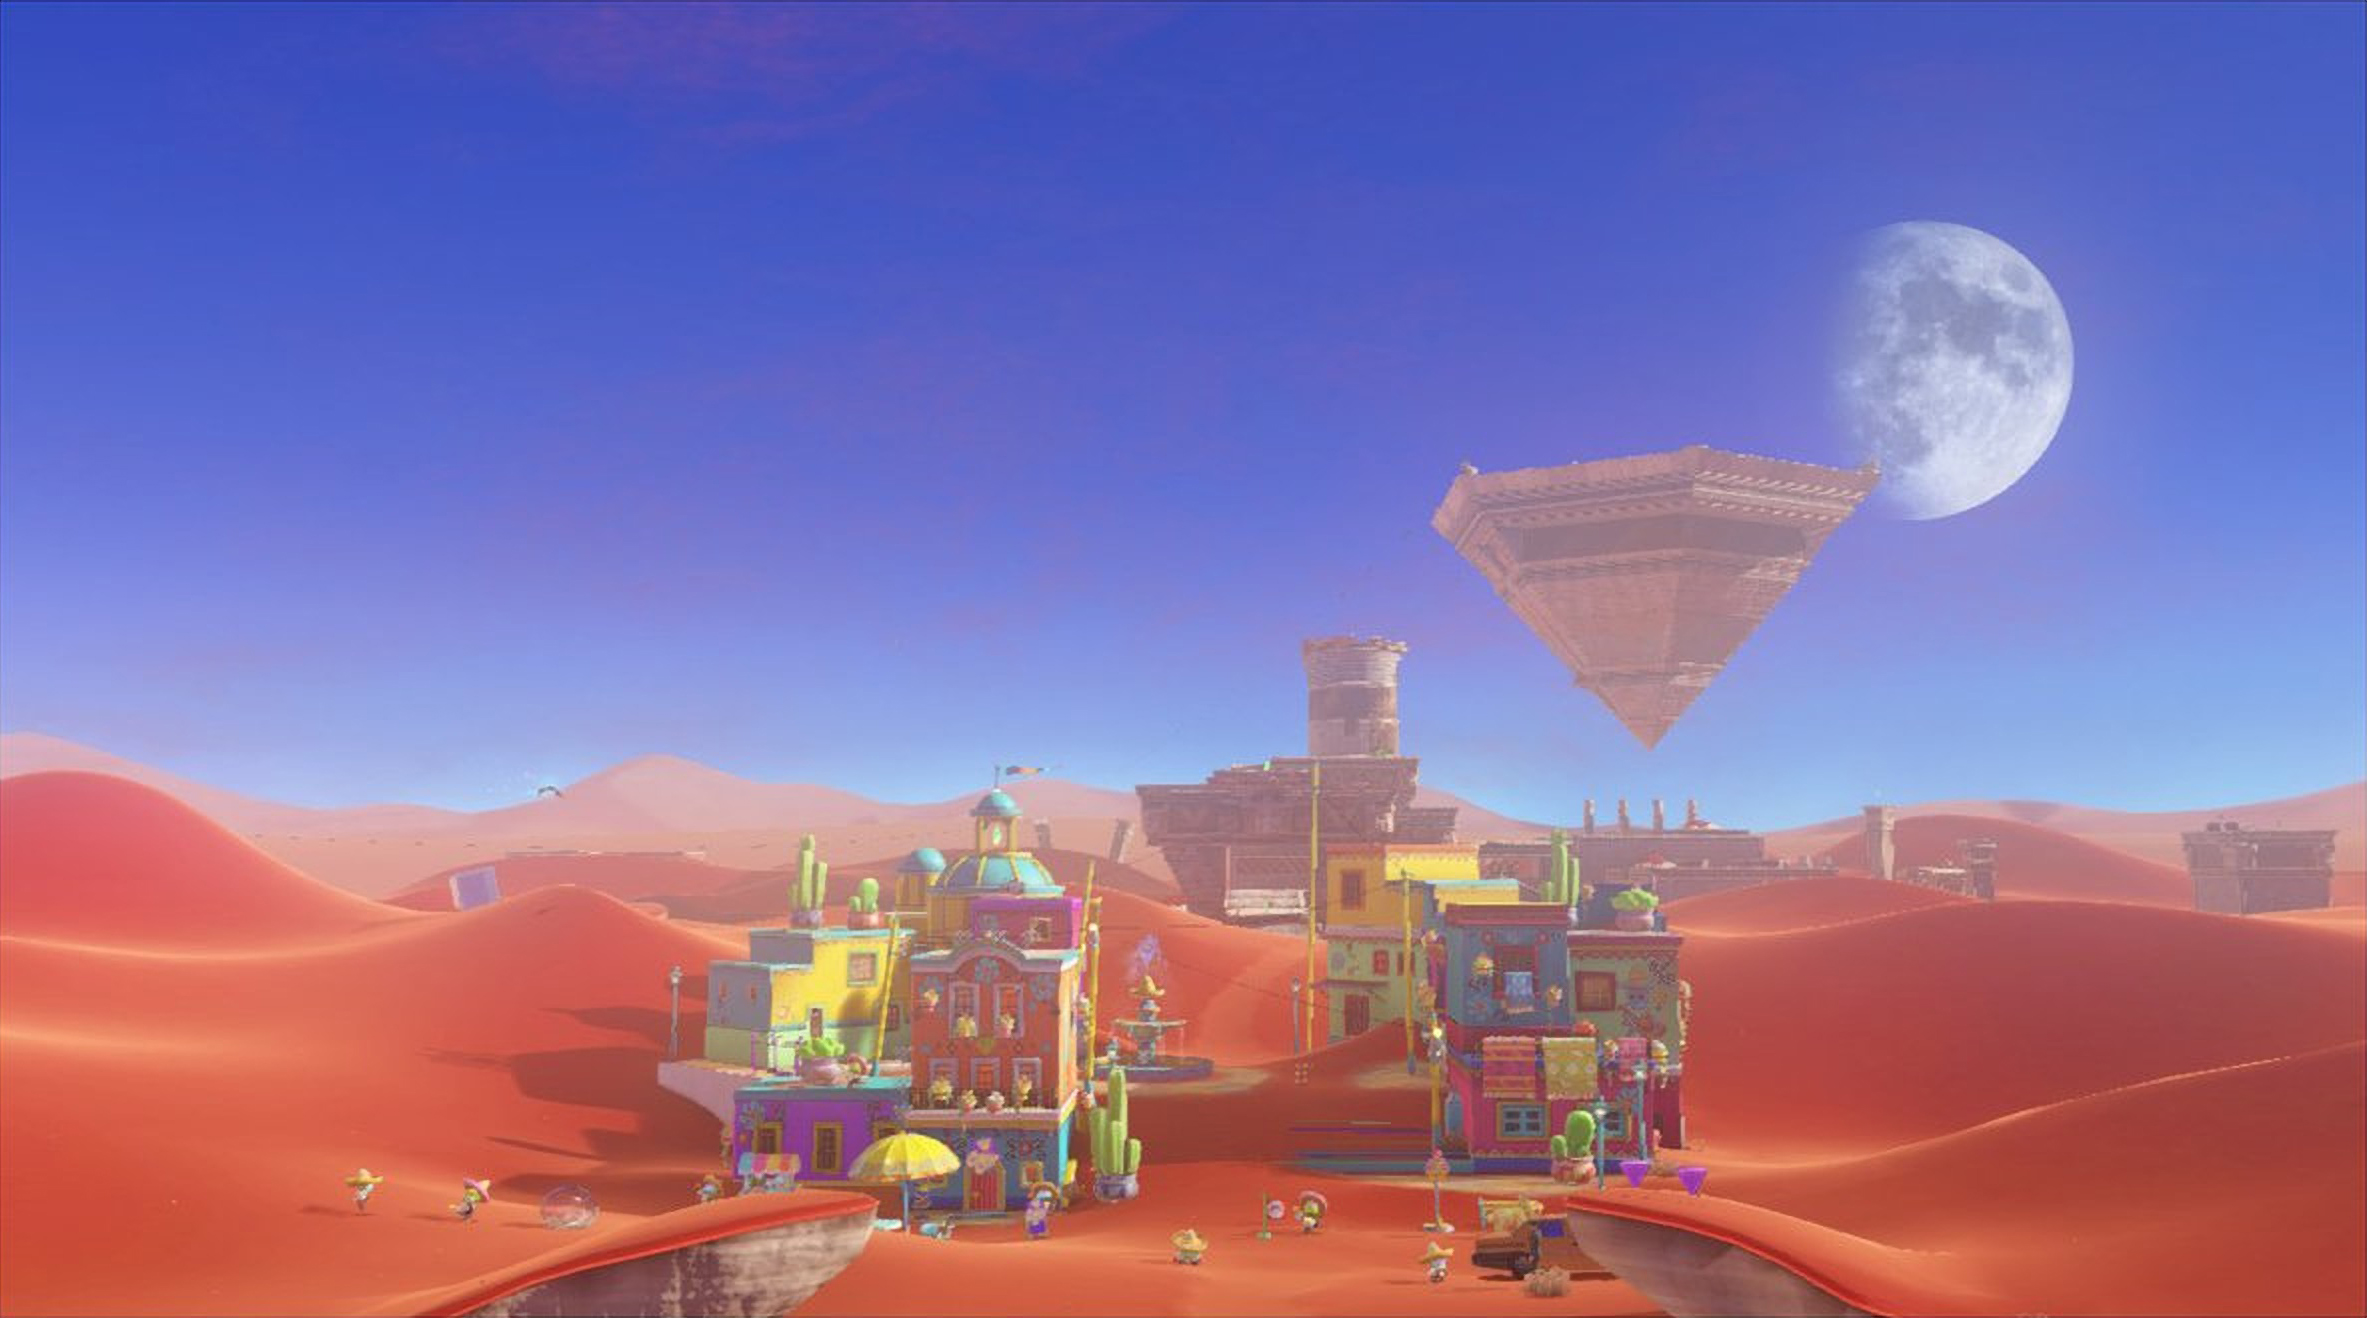 Mario Odyssey Sand Kingdom Backgrounds